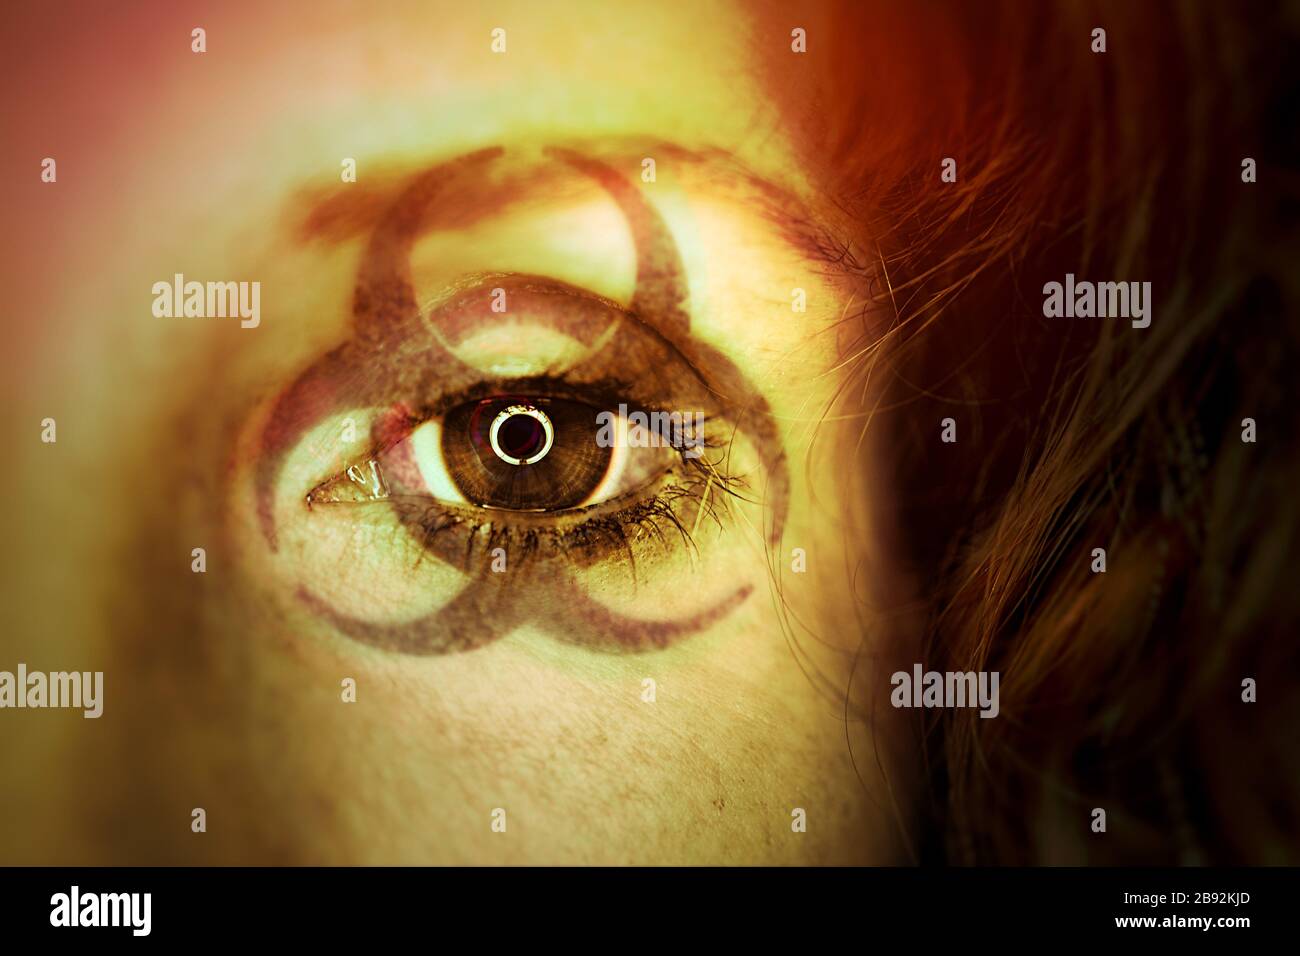 FOTOMONTAGE, Biogefährdungszeichen im Gesicht einer Frau, Symbolfoto Coronavirus Stock Photo